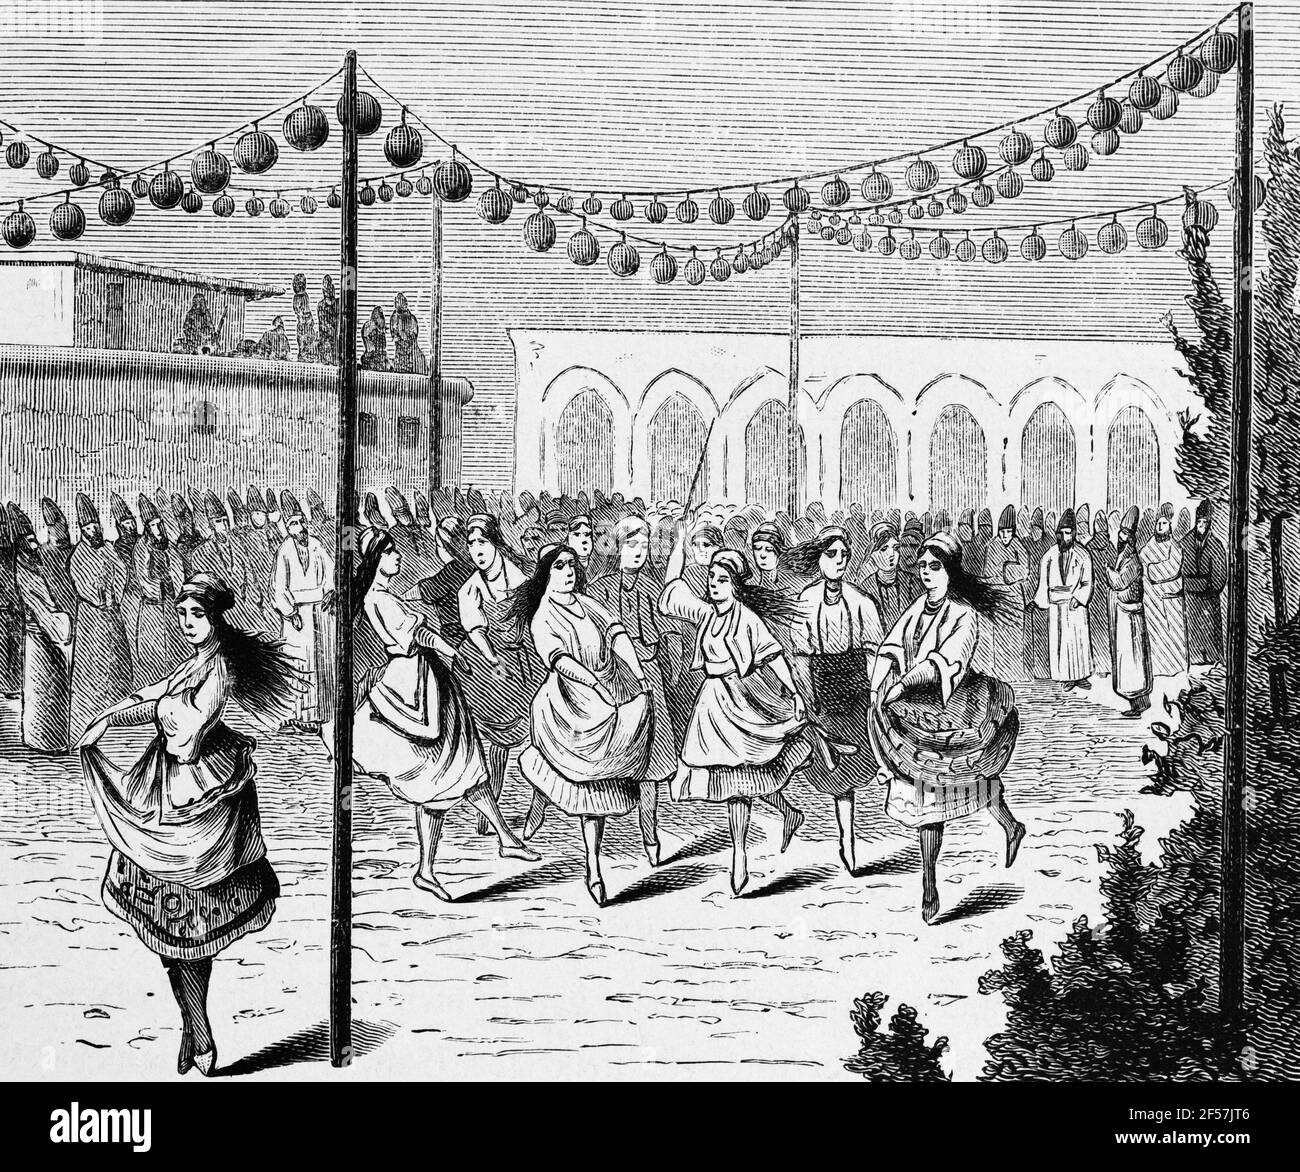 Fête de mariage perse avec des garçons déguerdés comme des filles dansent, Perse ou Iran, Moyen-Orient Asie, gravure en bois, Wien. Leipzig 1881 Banque D'Images